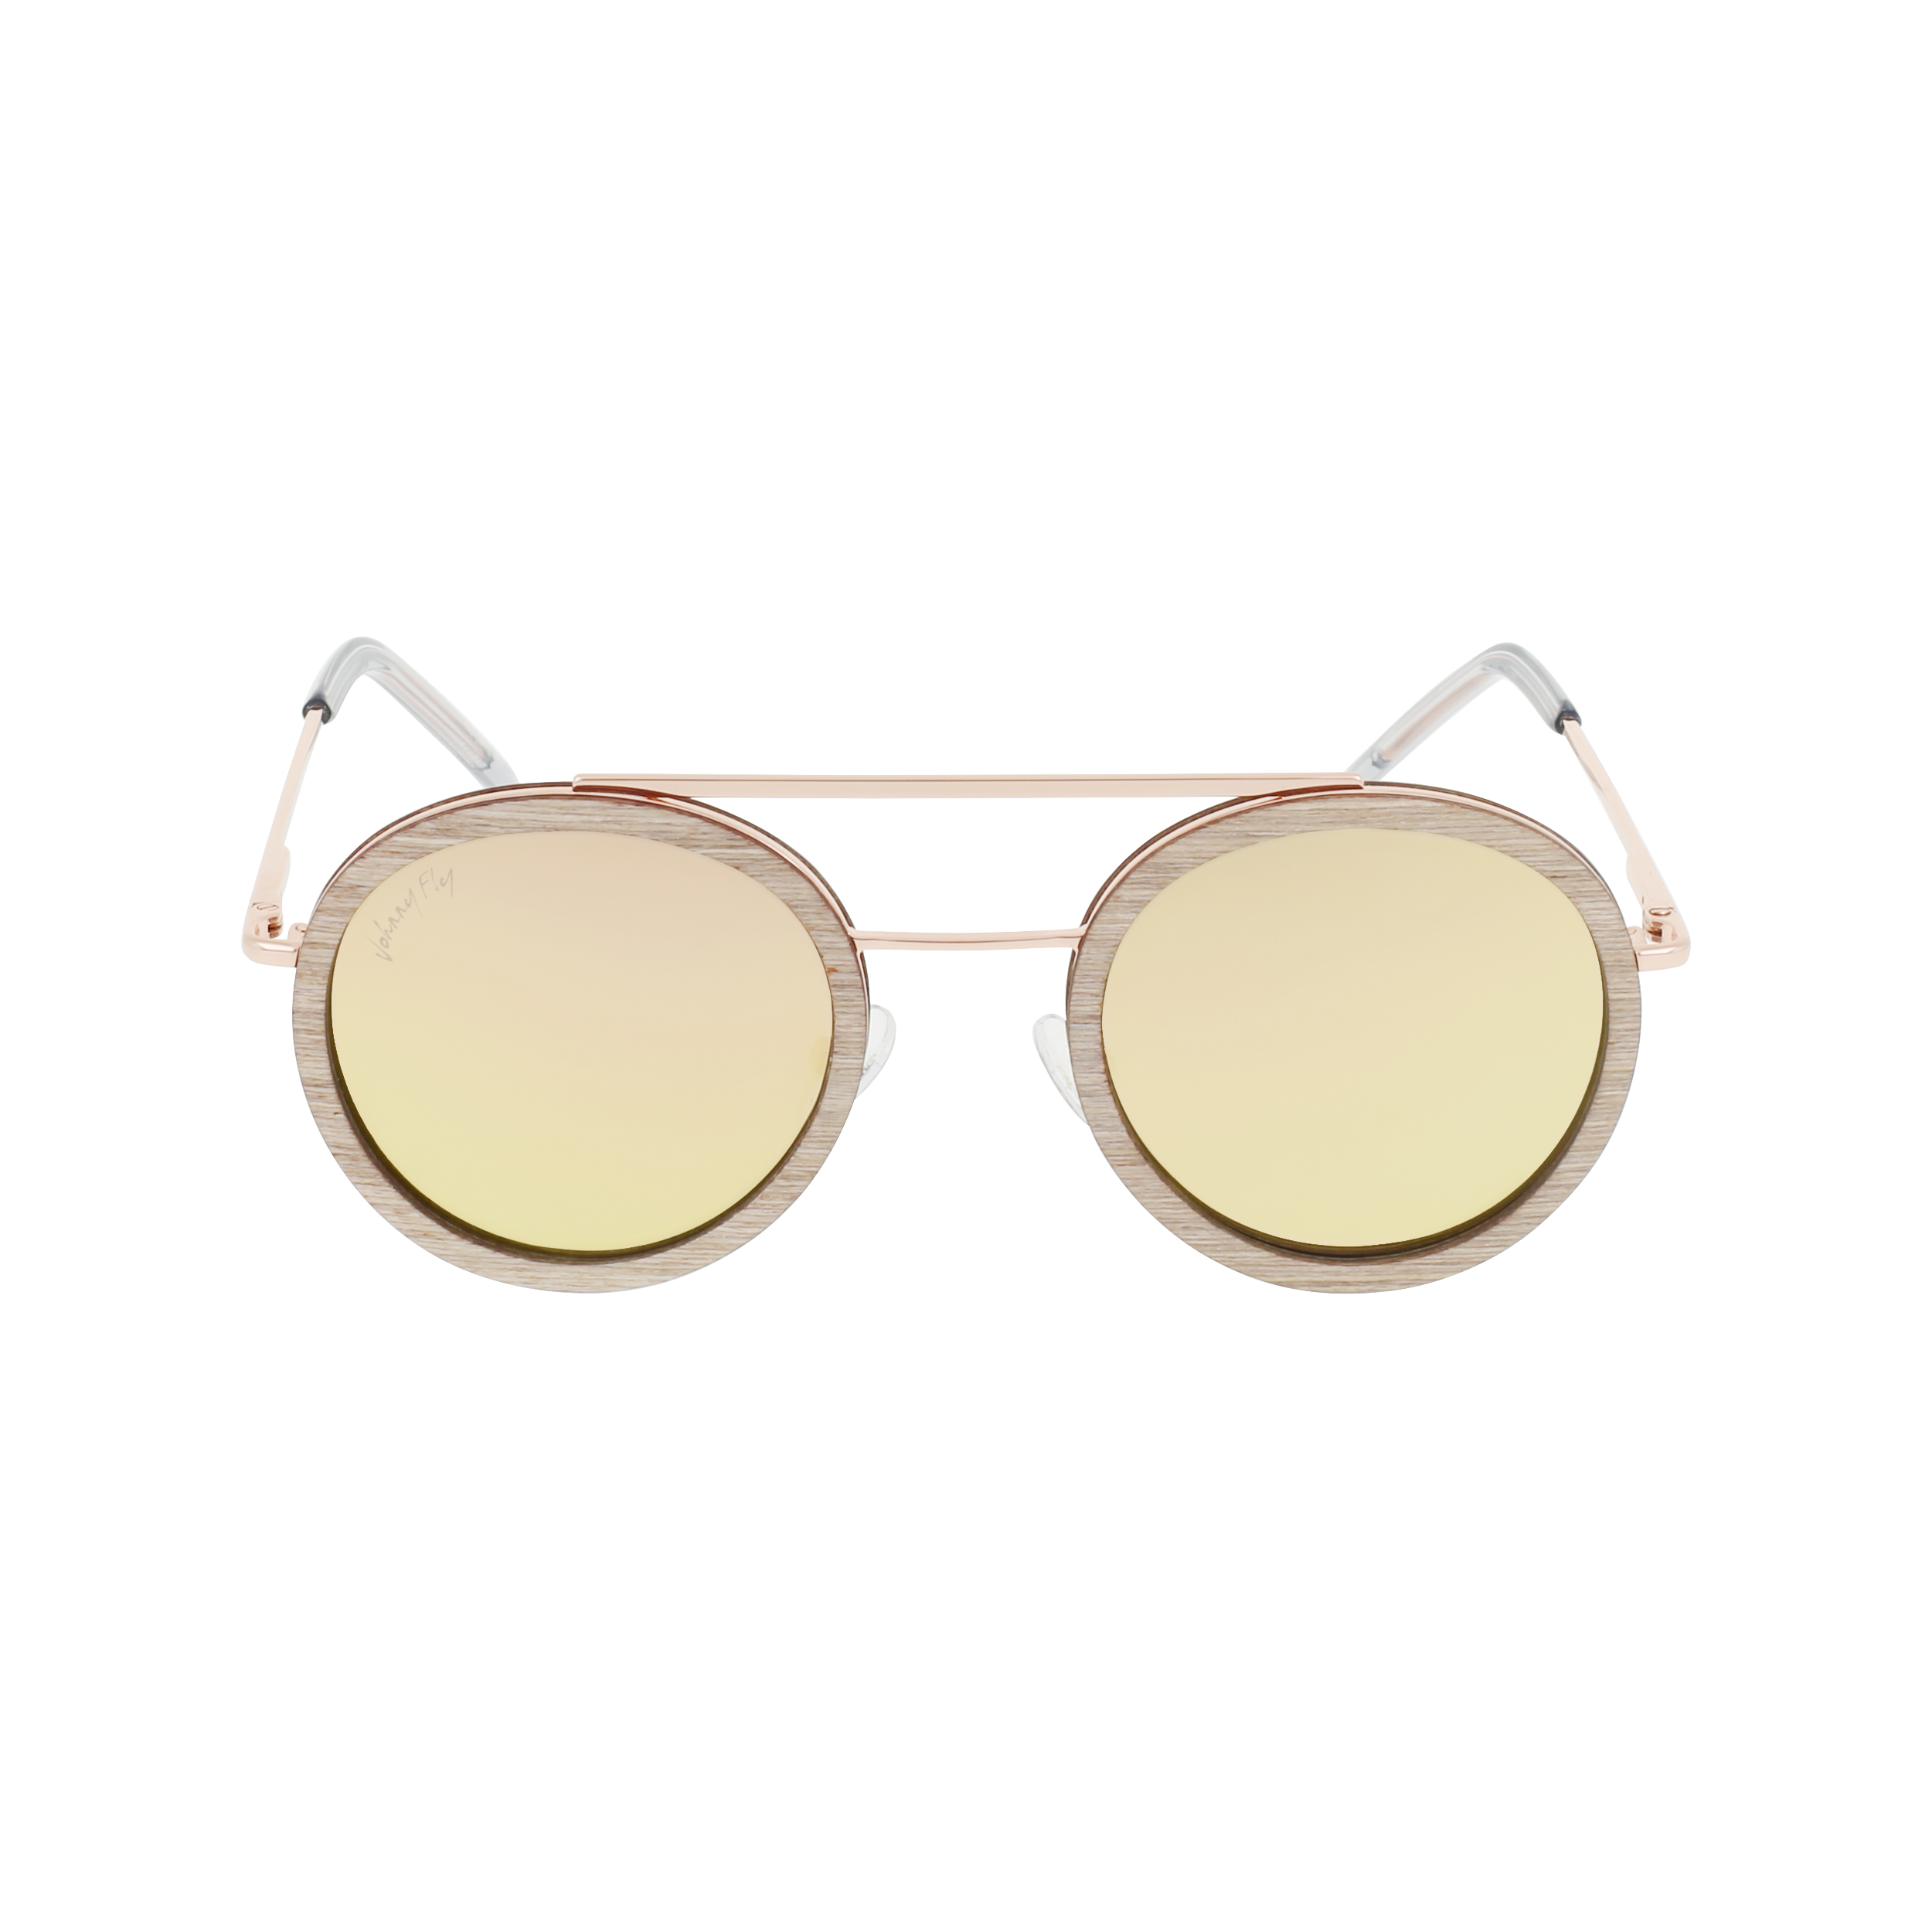 RIKER Sunglasses Frame - Rose Gold- Johnny Fly | RIK-RSGLD-REF-RSG-CL8026 | | 